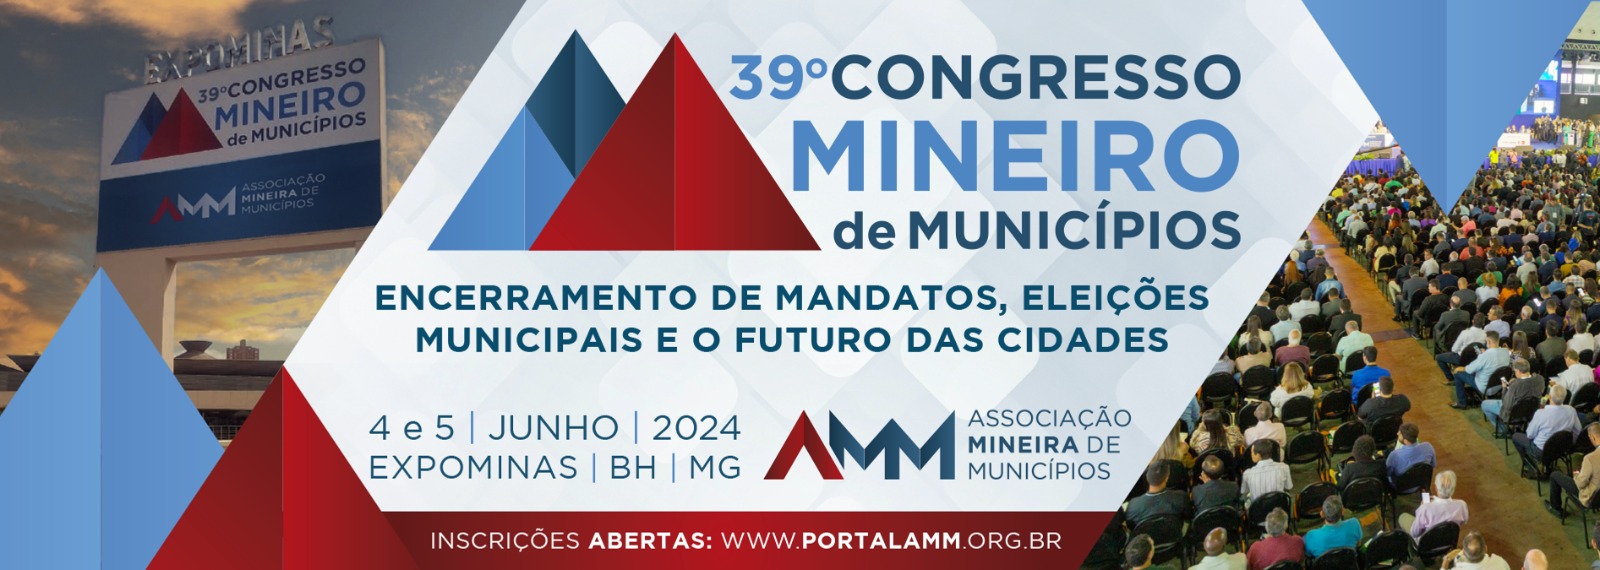 39º Congresso Mineiro de Municípios 2024